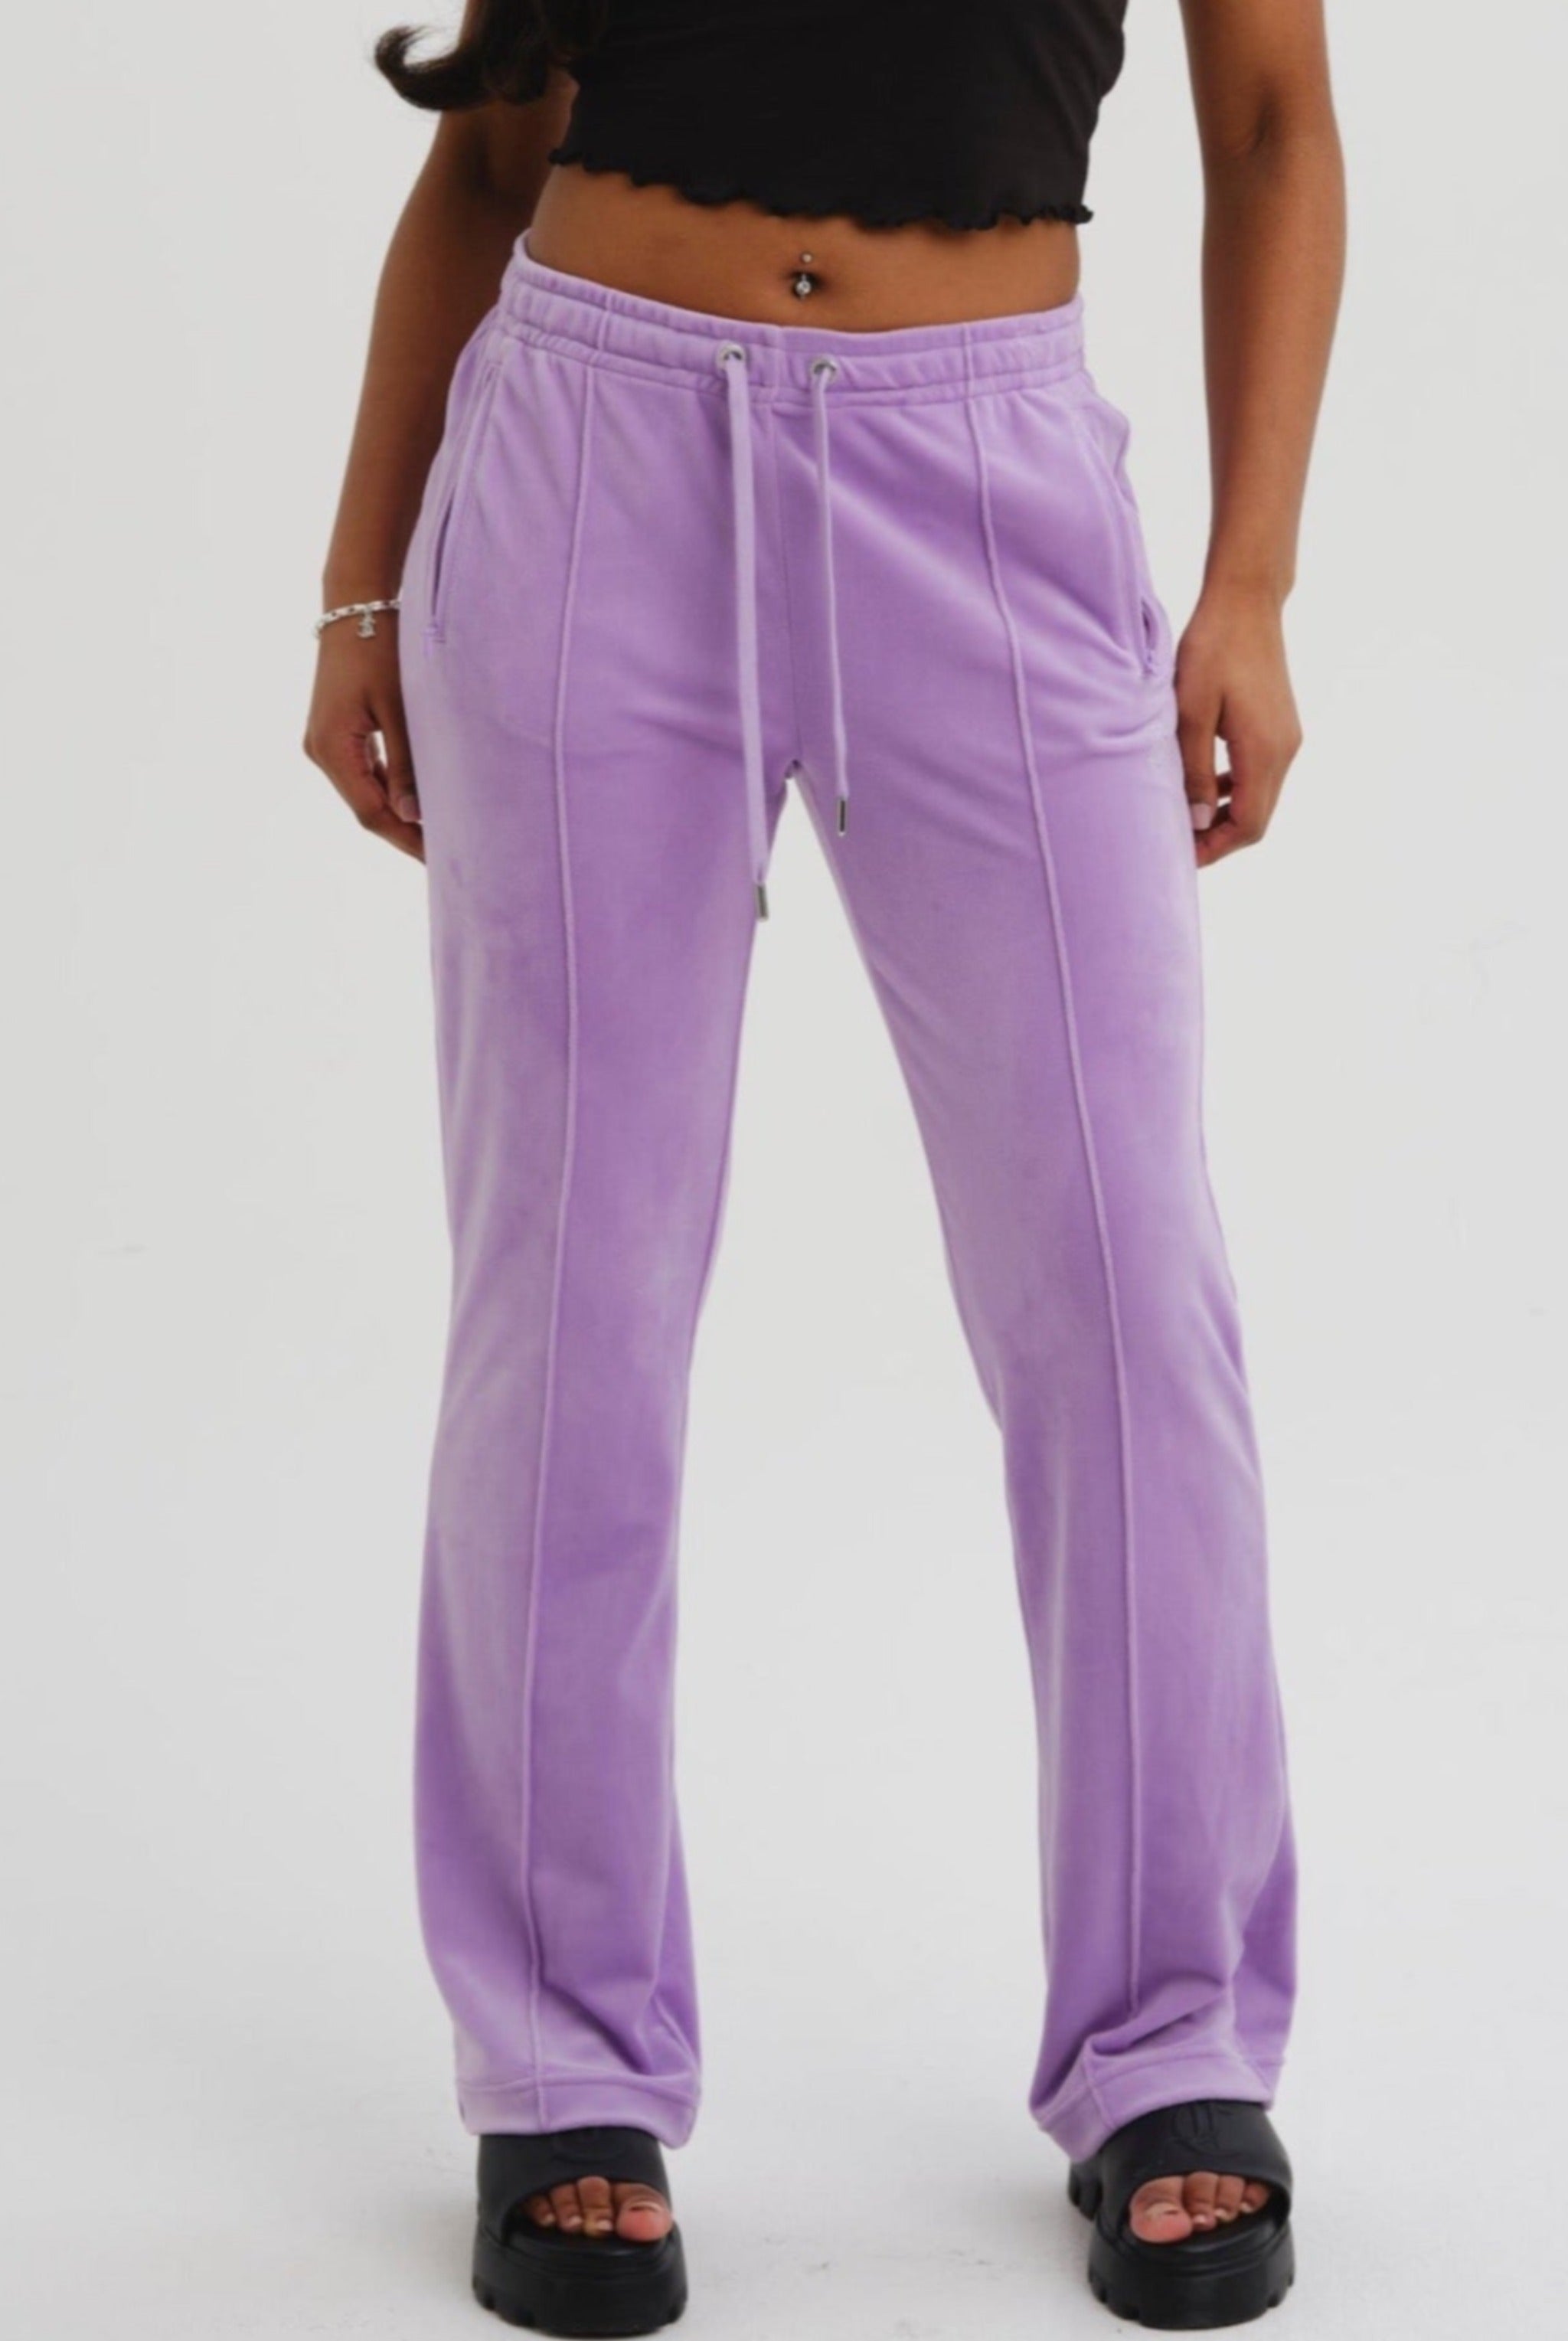 Juicy Couture TRACK PANTS - Tracksuit bottoms - lilac sachet/lilac -  Zalando.de